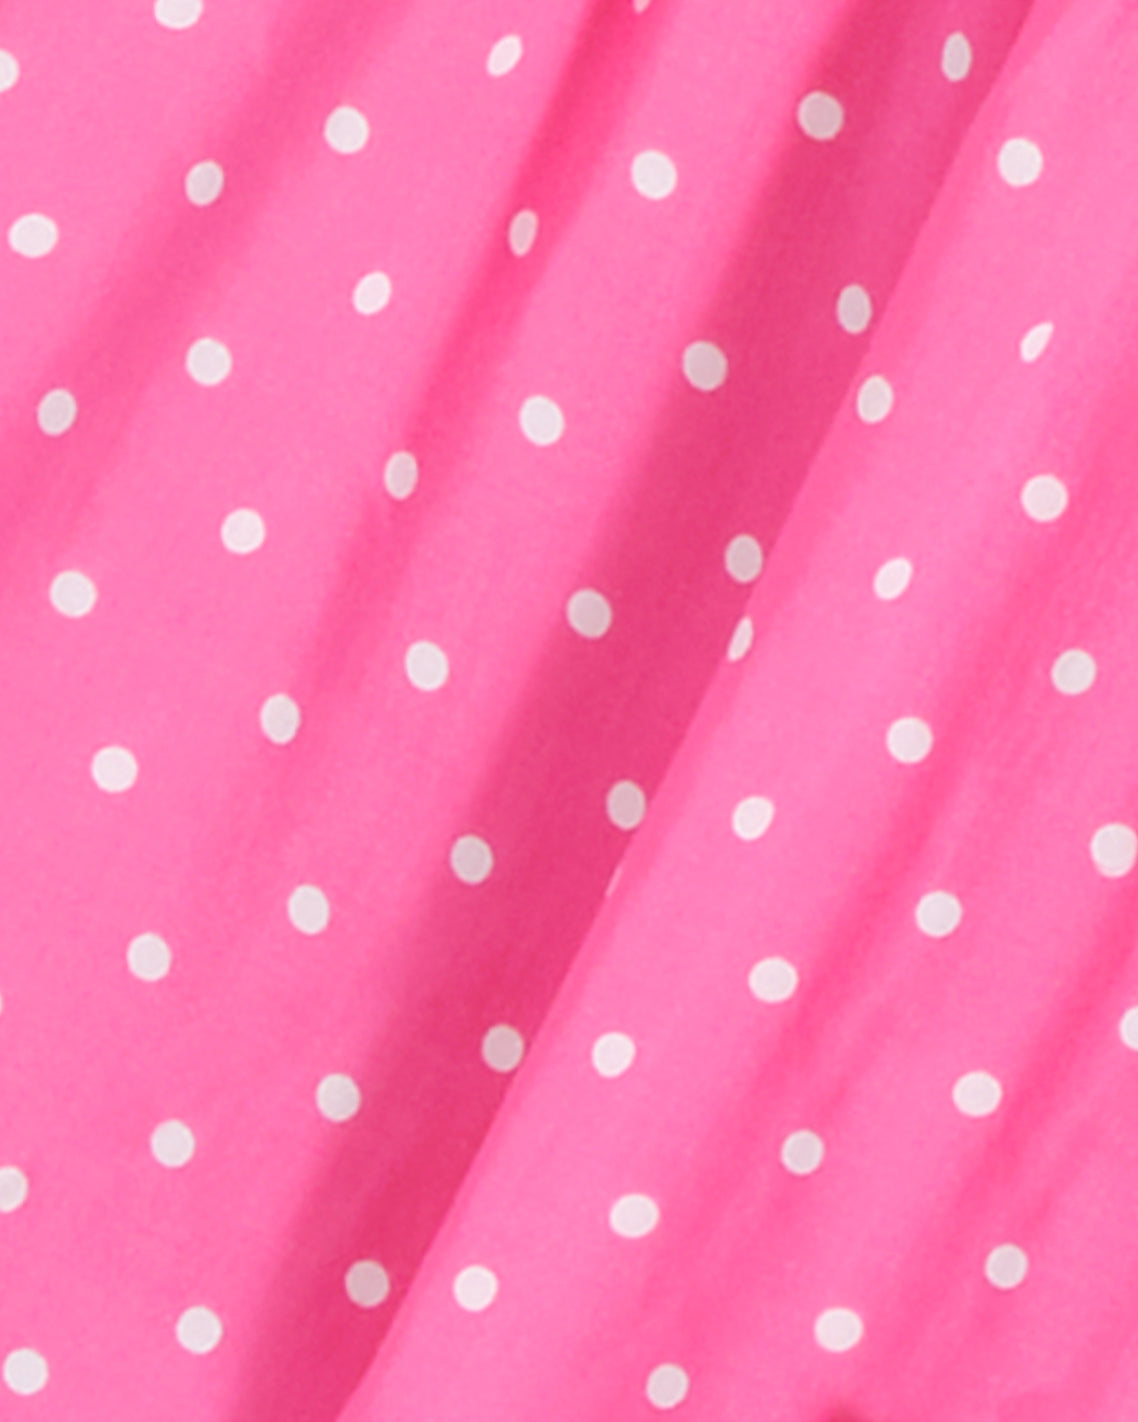 Bonnie Midi Dress in Polka Dots